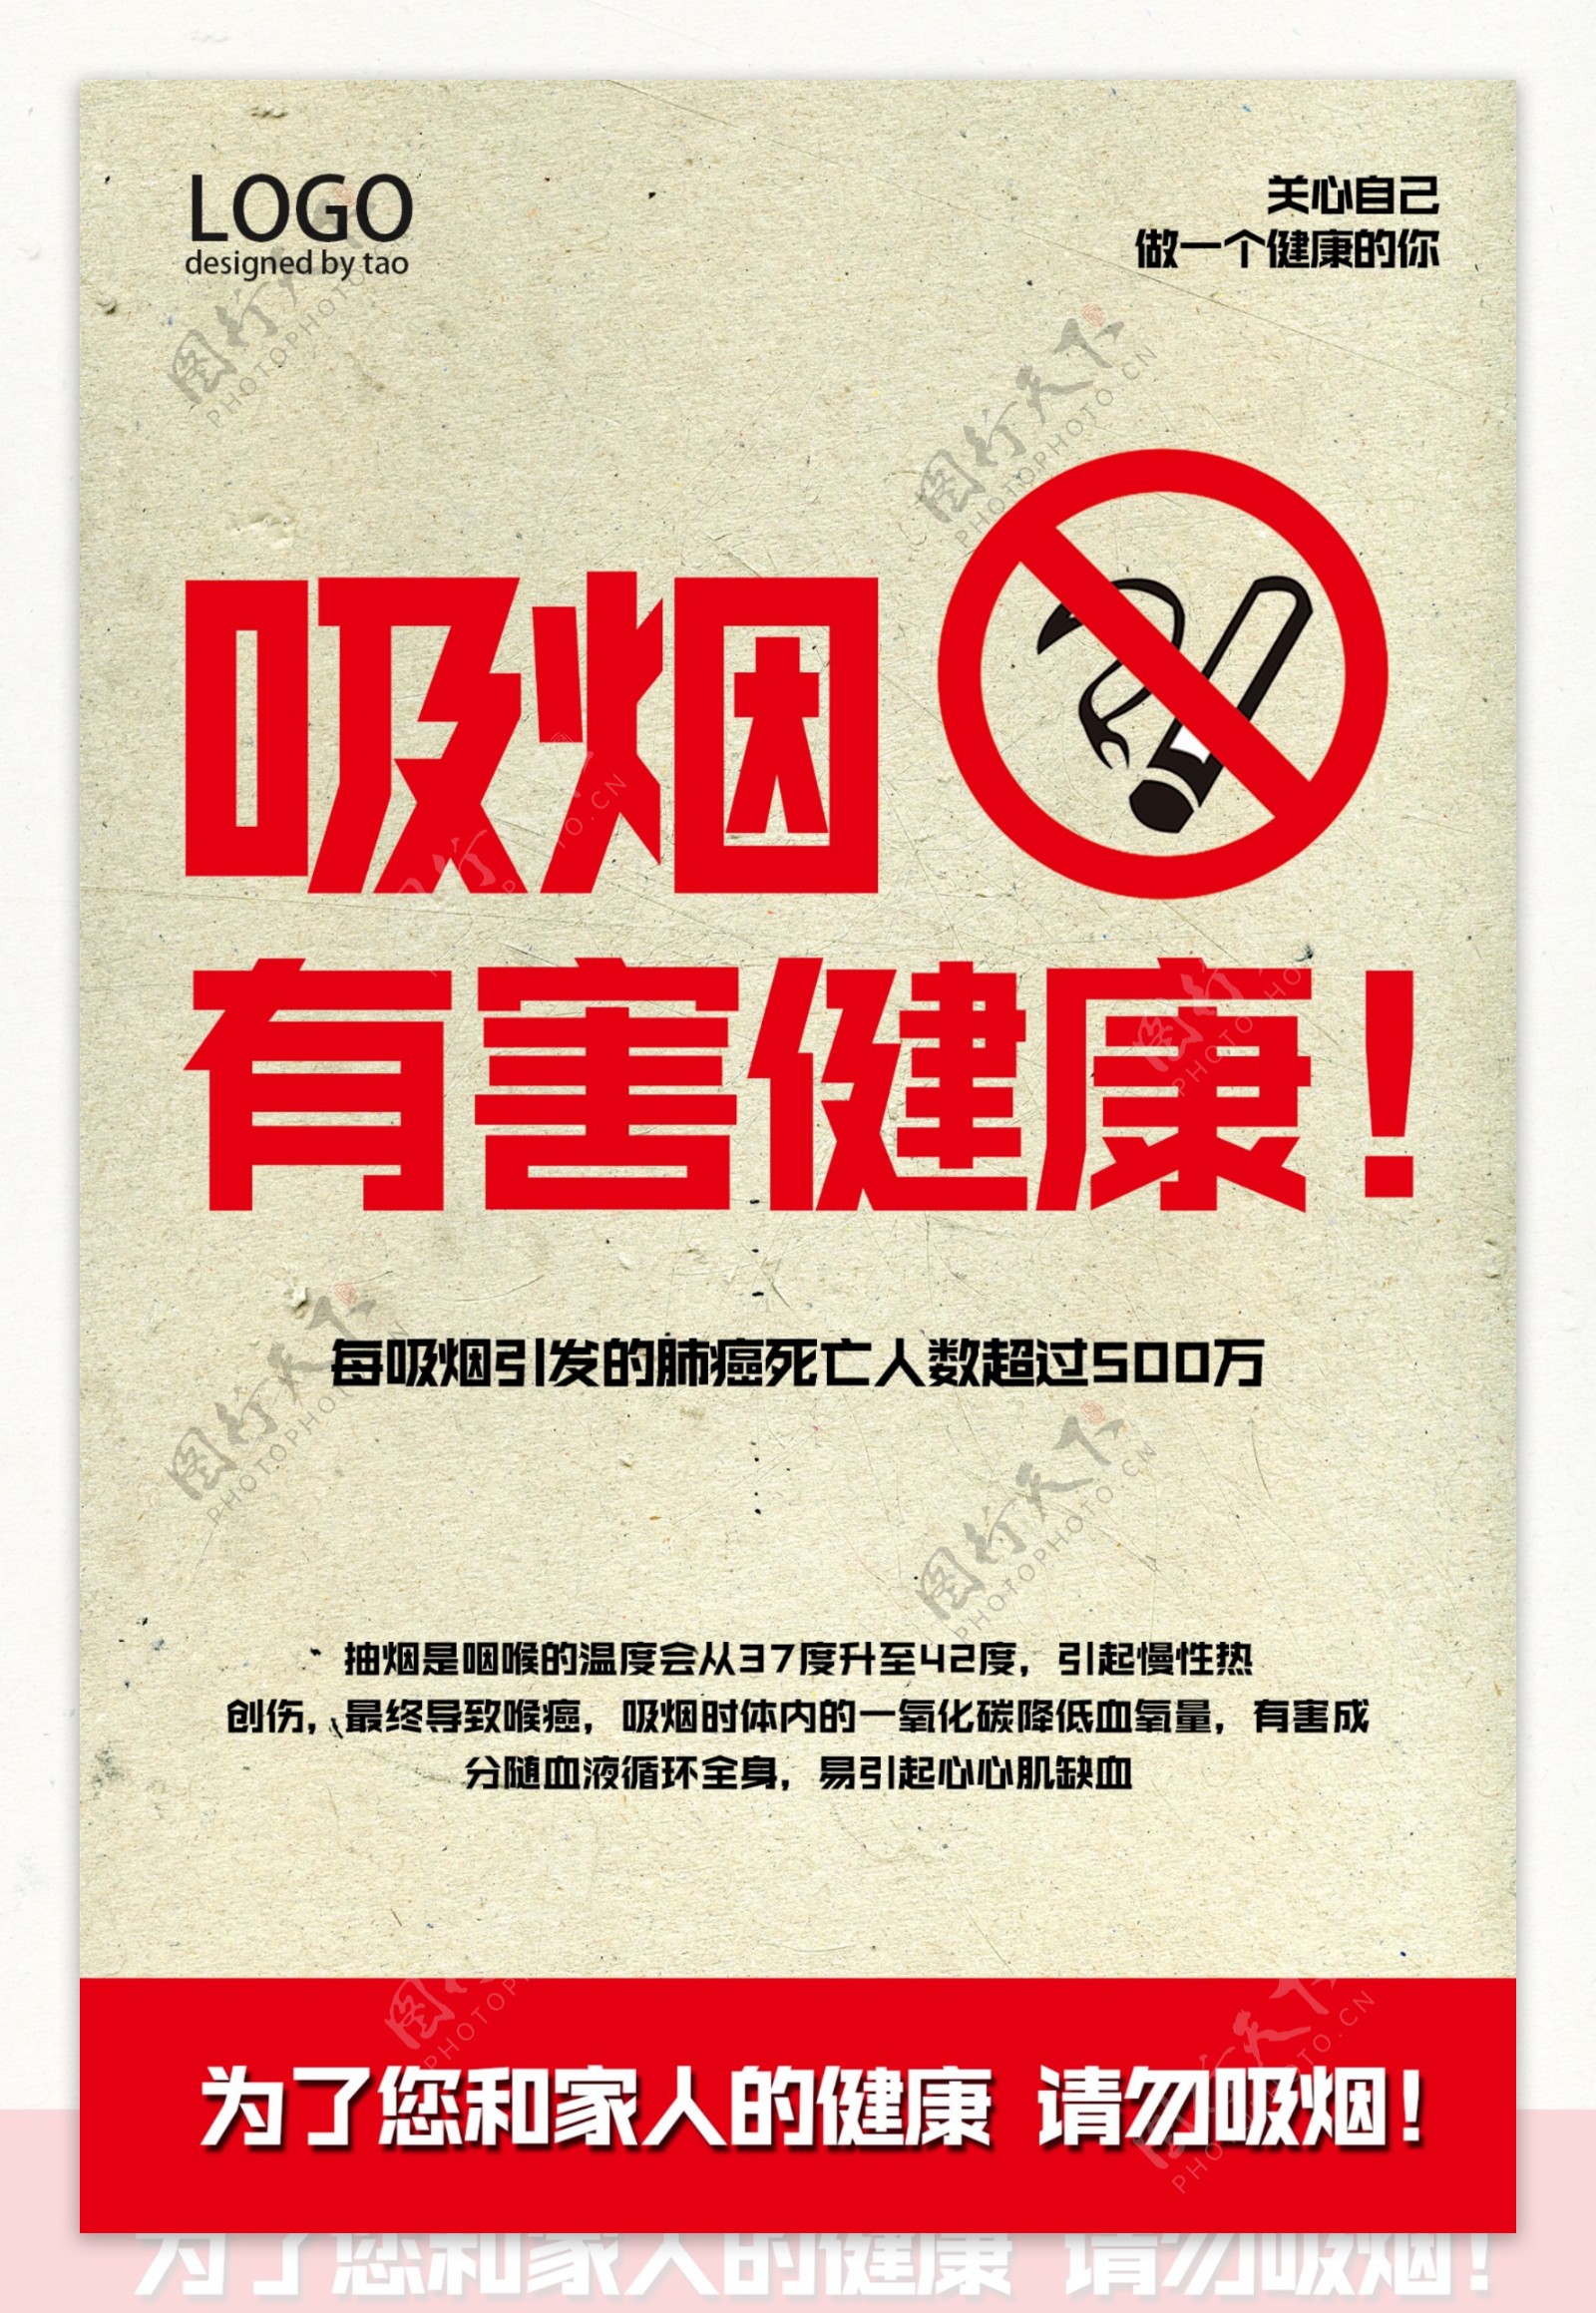 禁止吸烟公益活动宣传海报素材